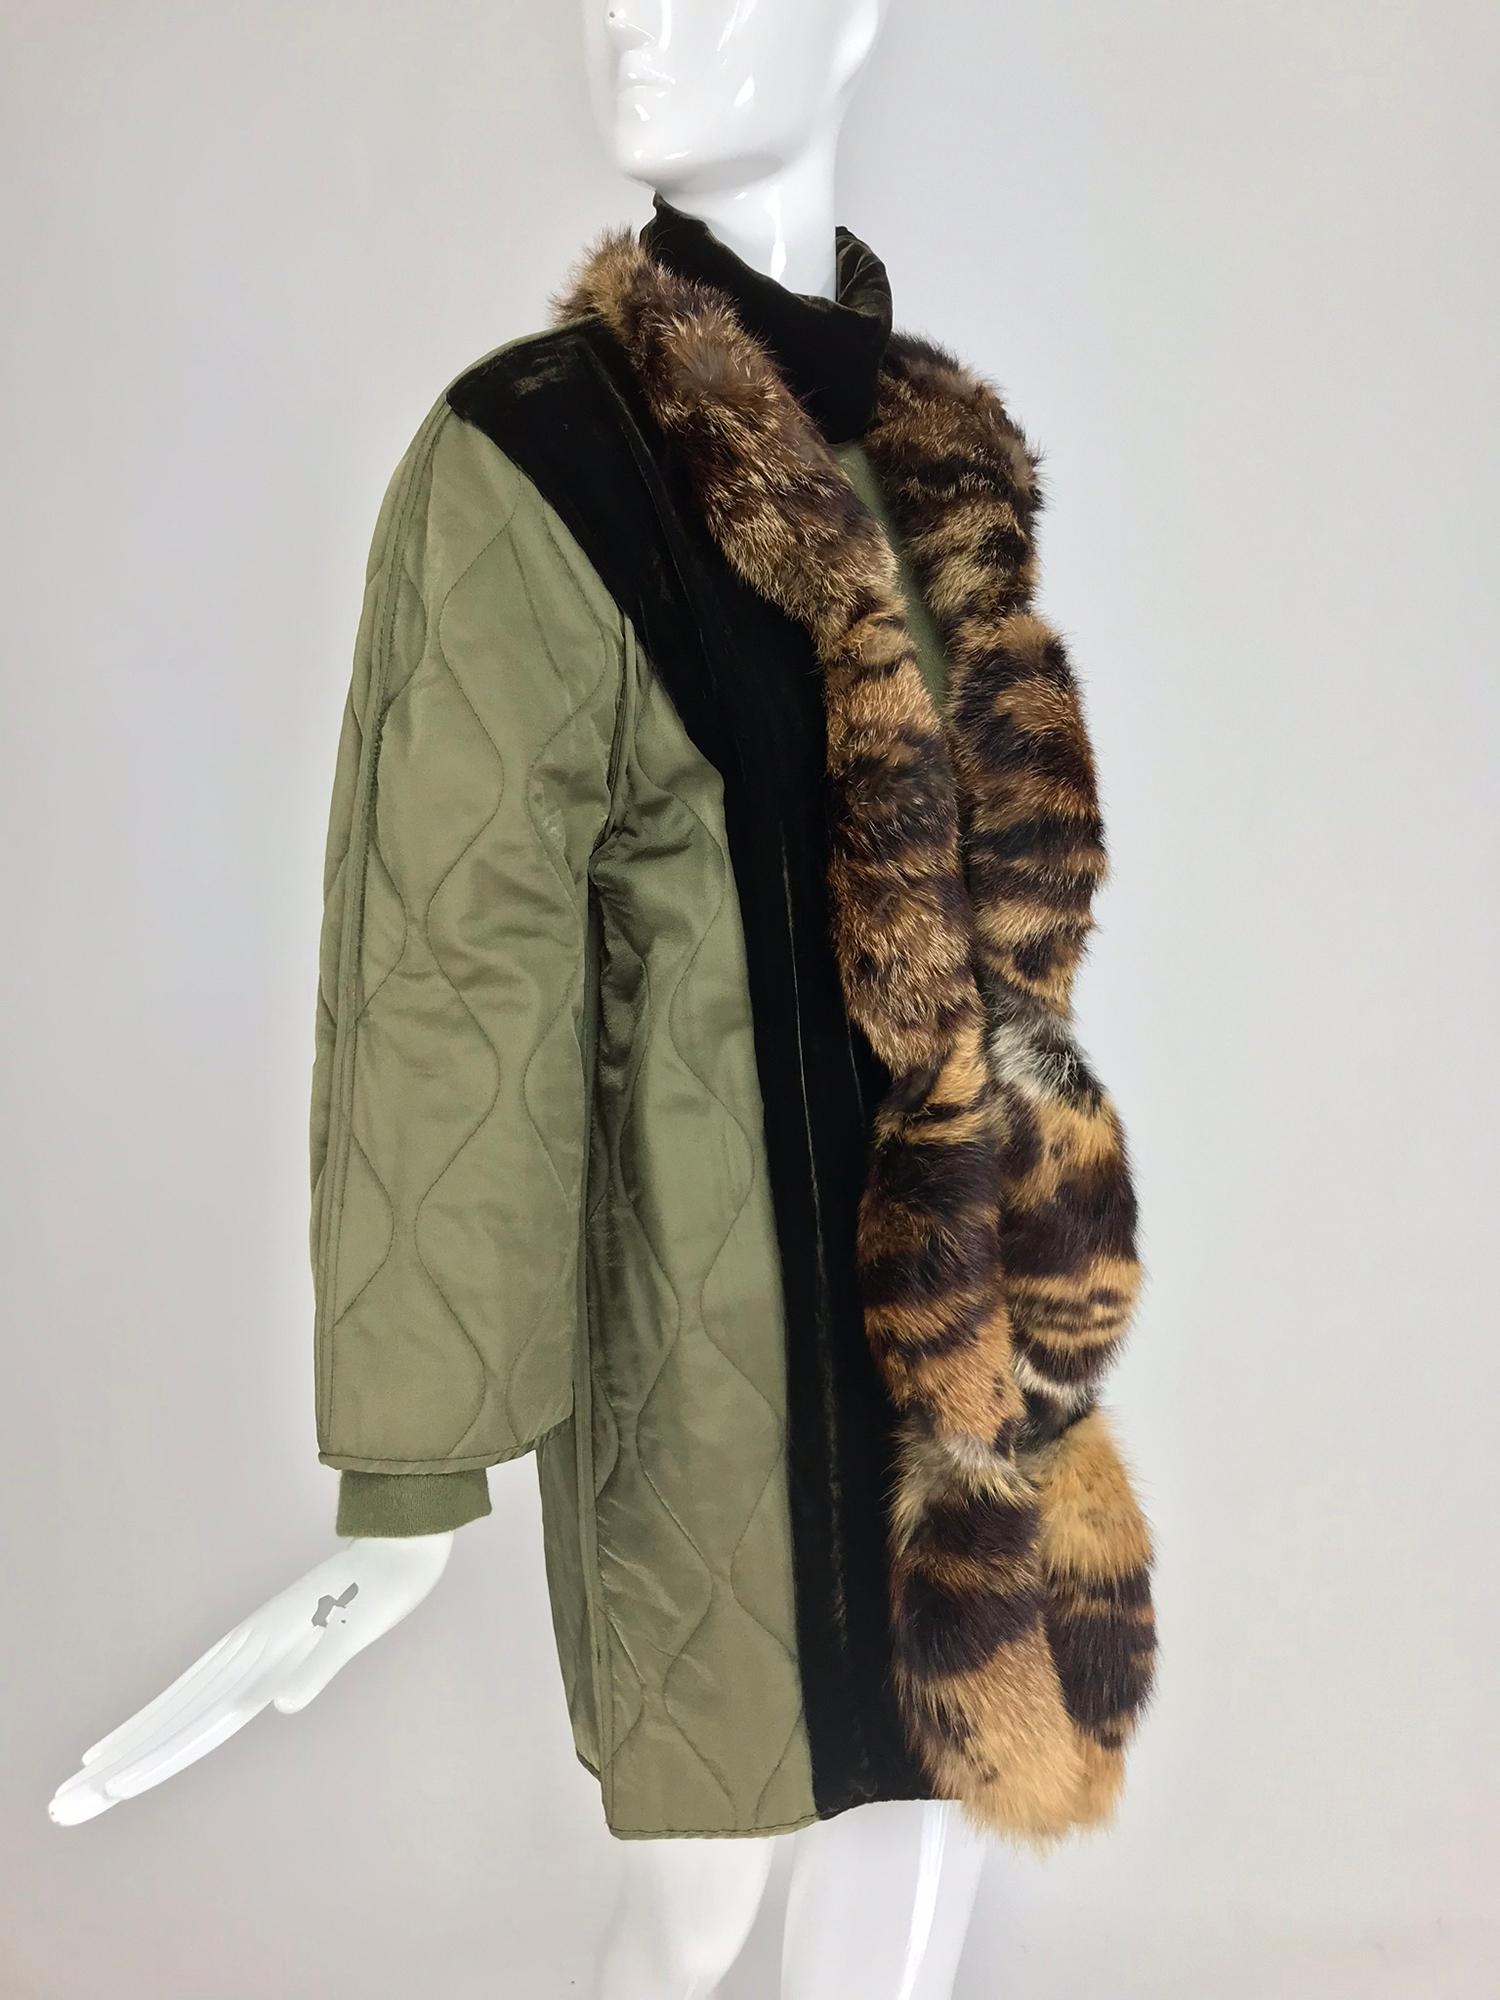 Gianfranco Ferre' Samt und Pelz besetzte Steppjacke mit passendem Pullover aus den 1990er Jahren.  Olivgrüne Steppjacke mit Seitenteilen aus dunklerem Samt, die Vorderseiten der Jacke sind mit Pelz besetzt. Diese Jacke ist vorne offen, keine